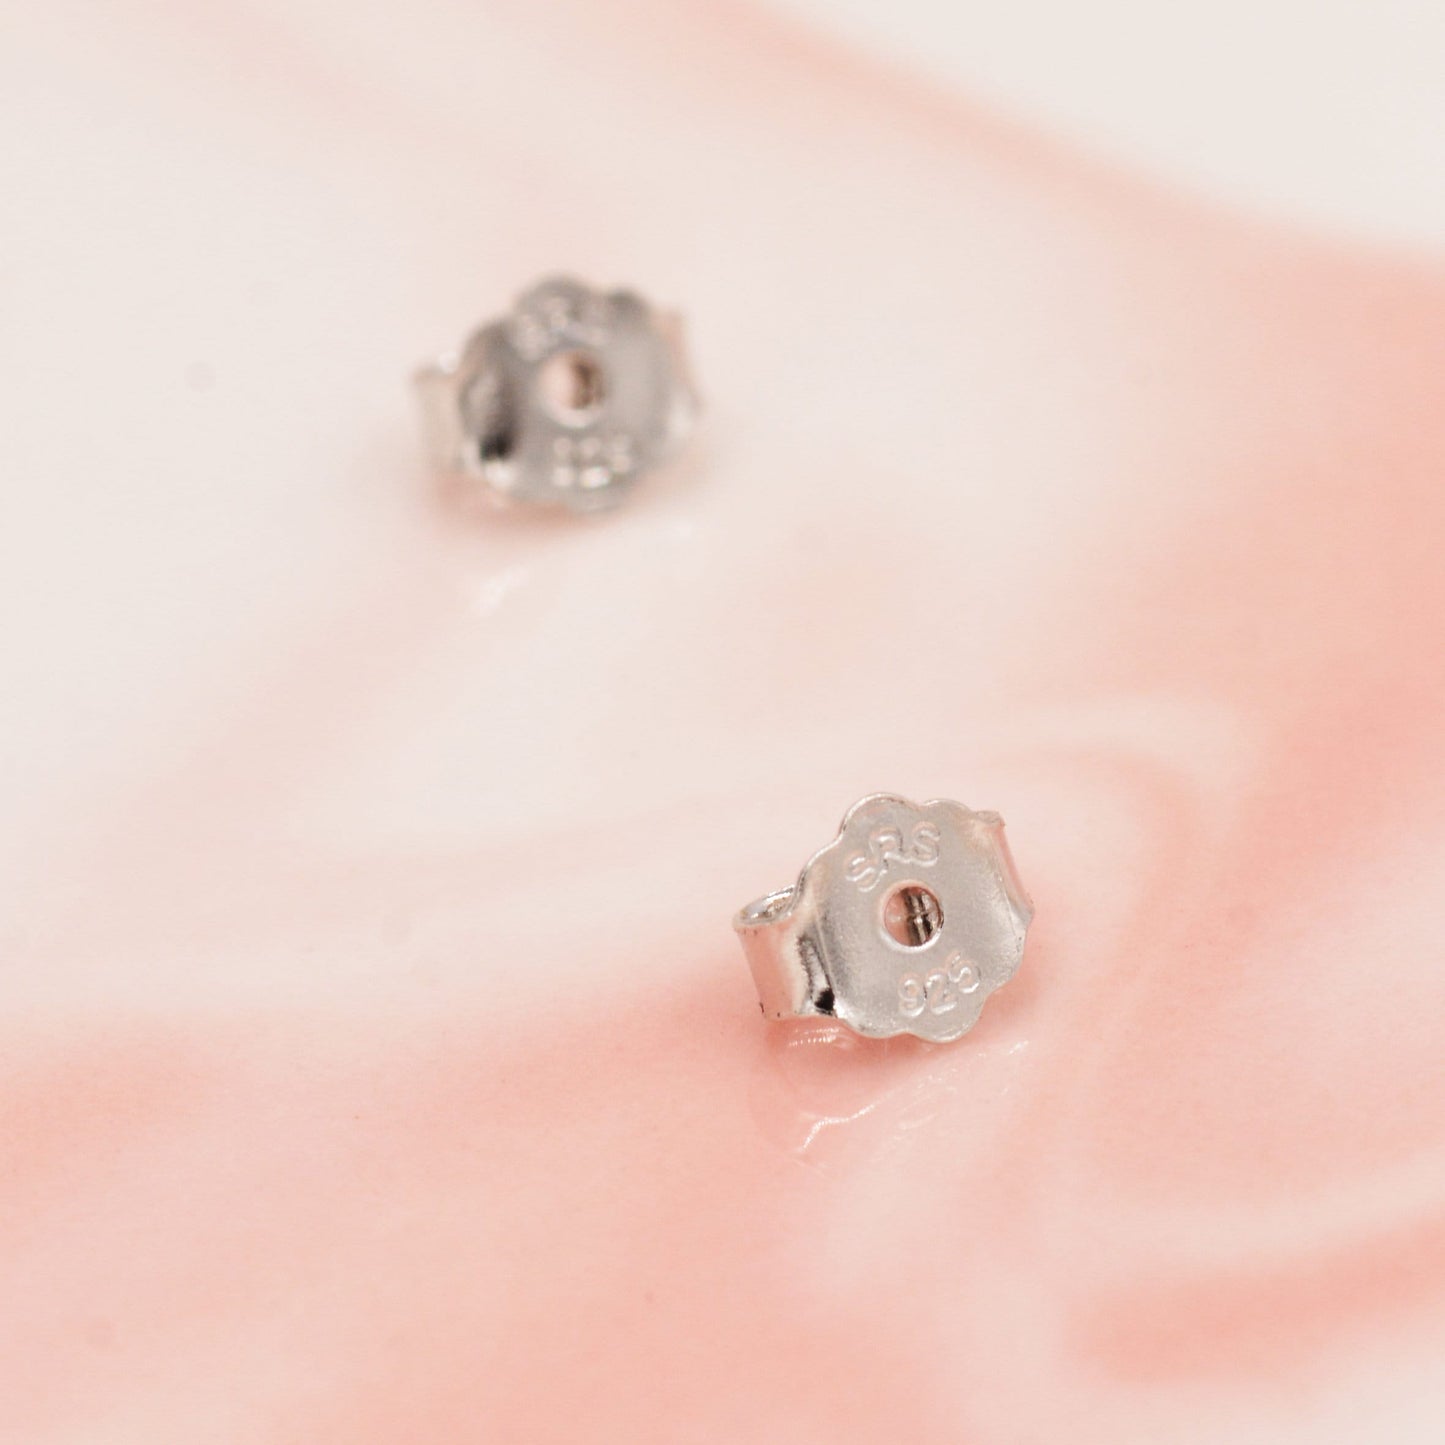 Extra Tiny Ocean Blue Opal Heart Stud Earrings in Sterling Silver - 3mm Fire Opal - Sustainable Lab Opal - Petite Stud Earrings